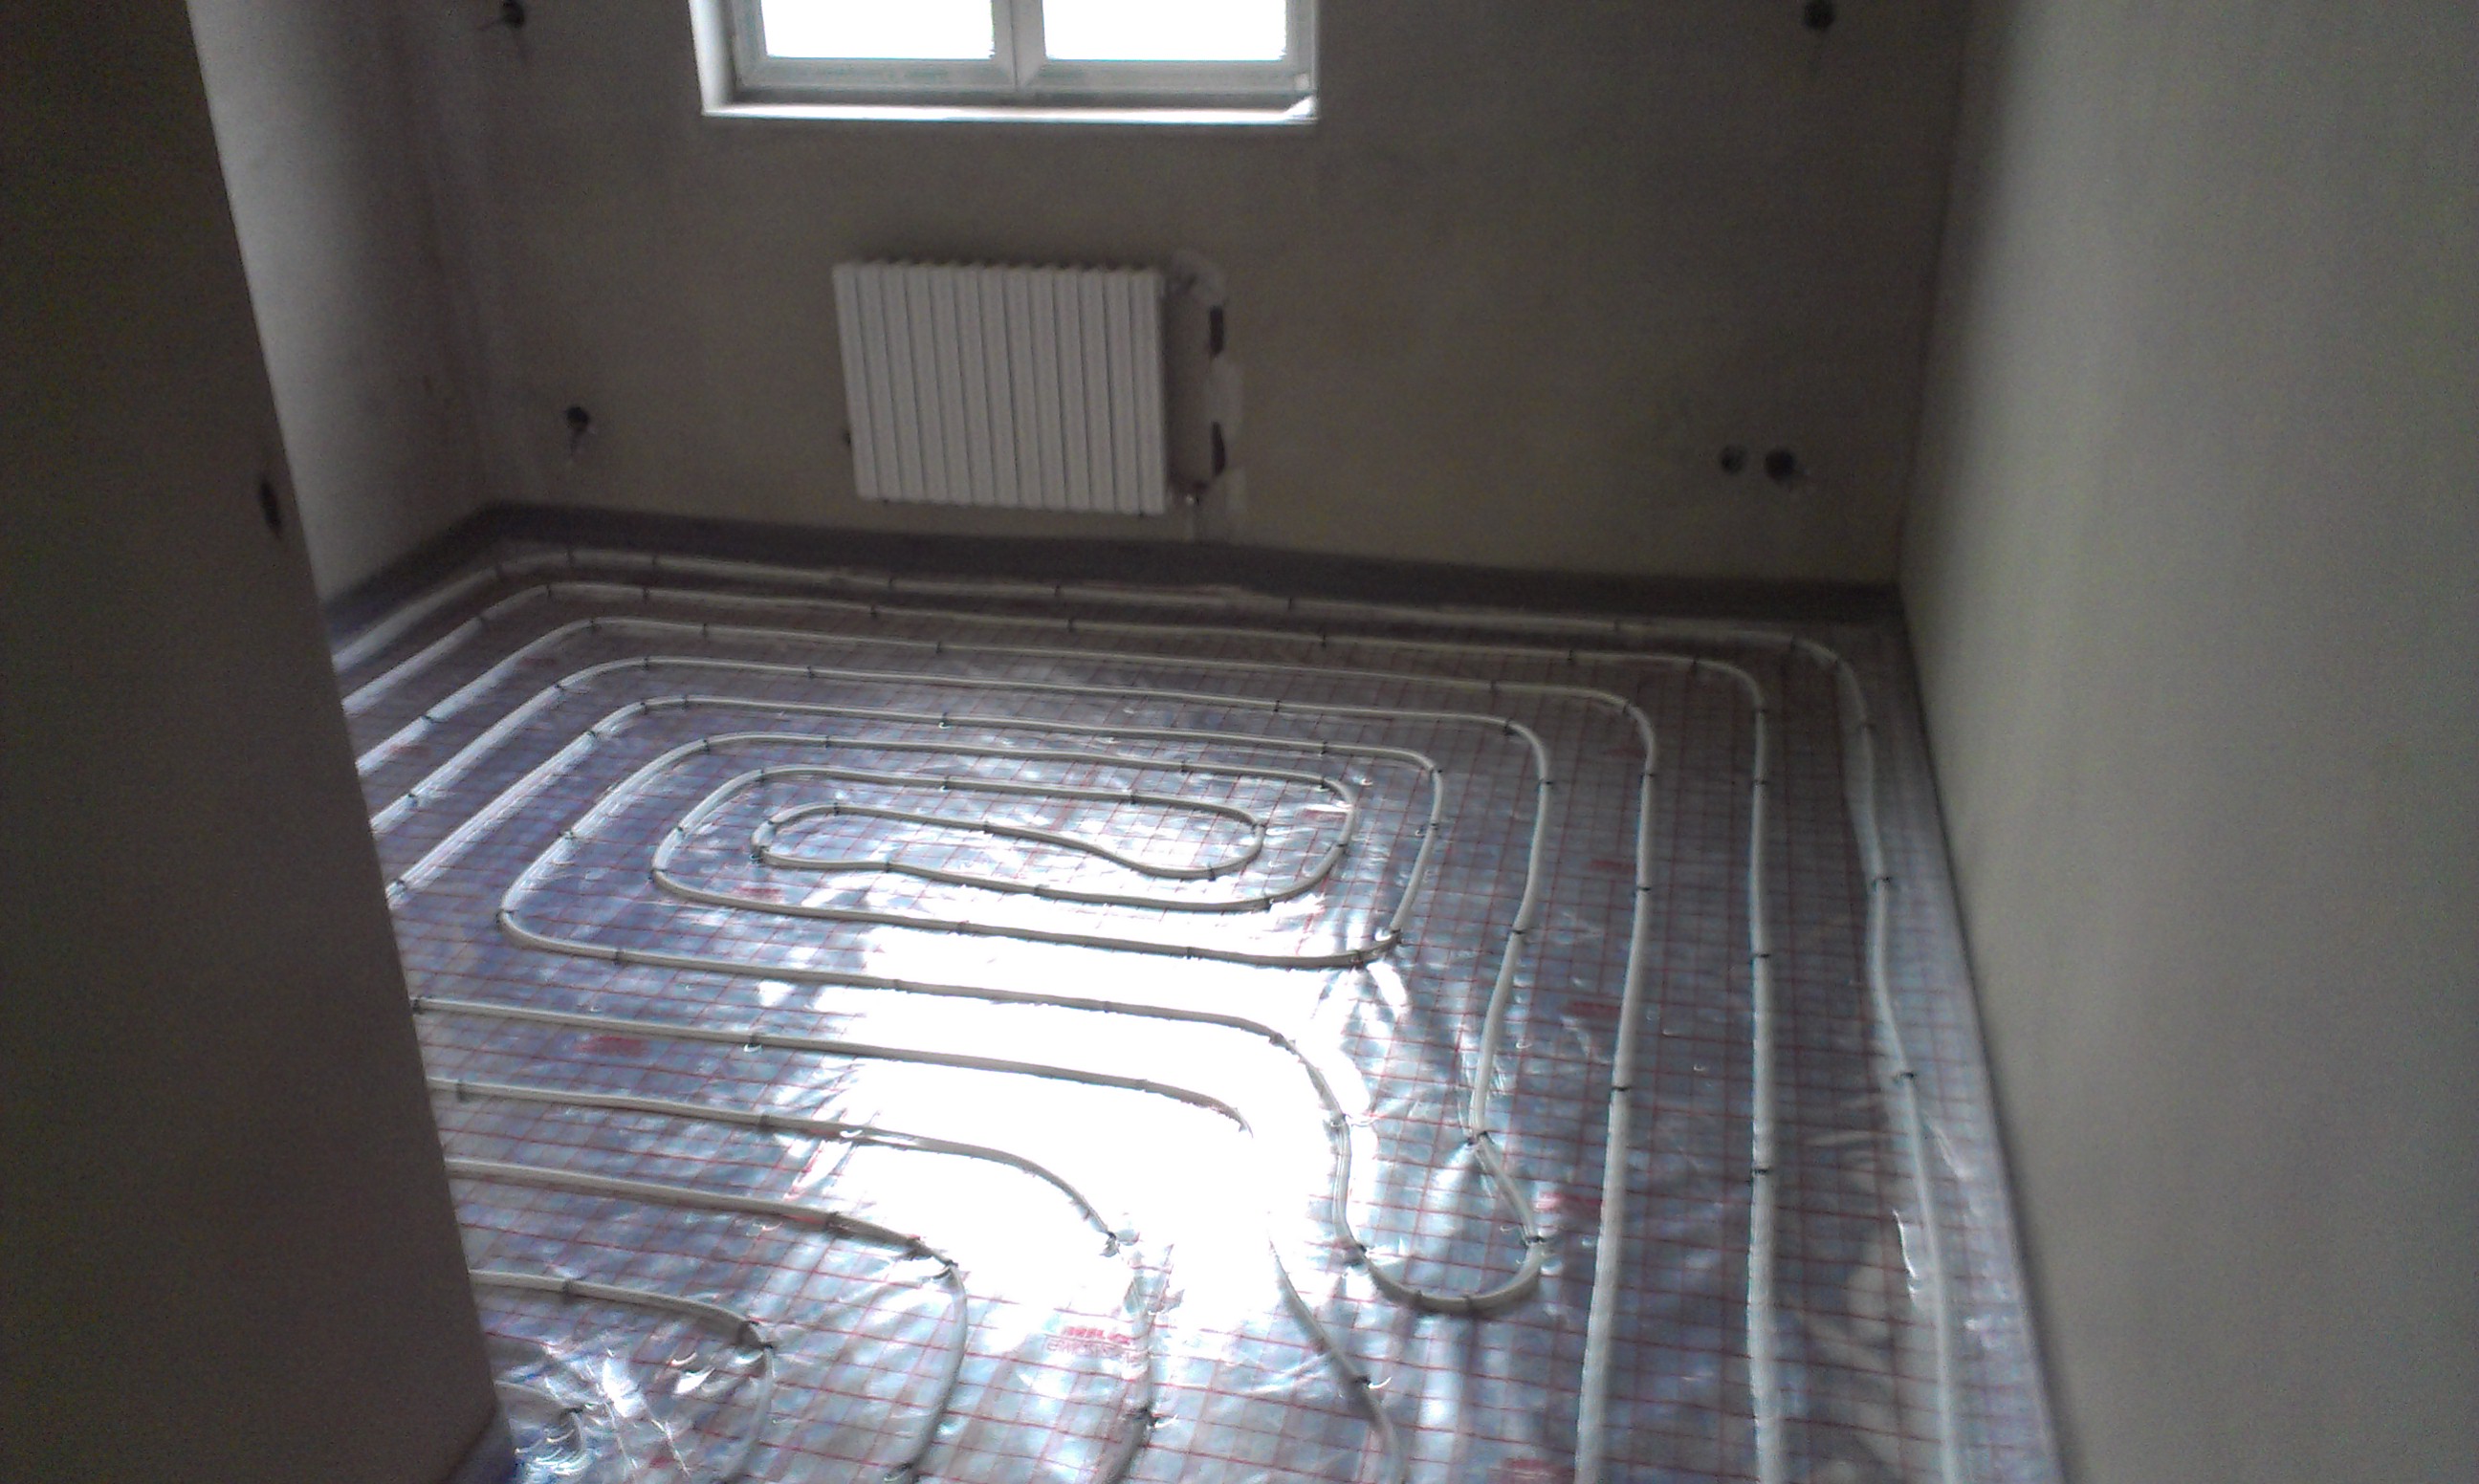 Podlahové topení v kombinaci s otopnými tělesy